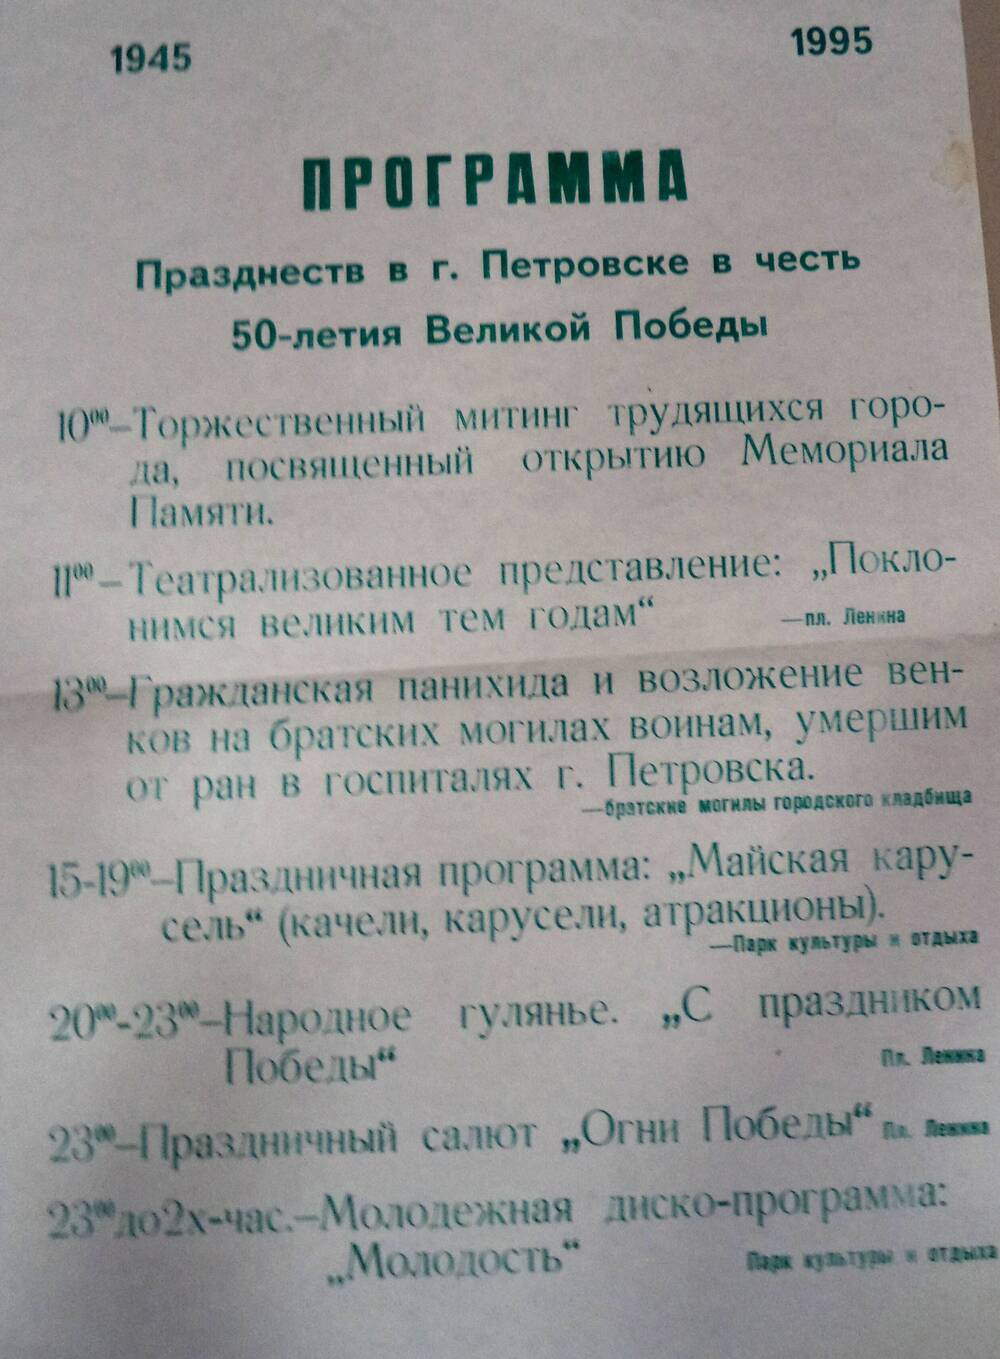 Программа Празднеств в г. Петровске в честь 50 - летия Великой Победы.